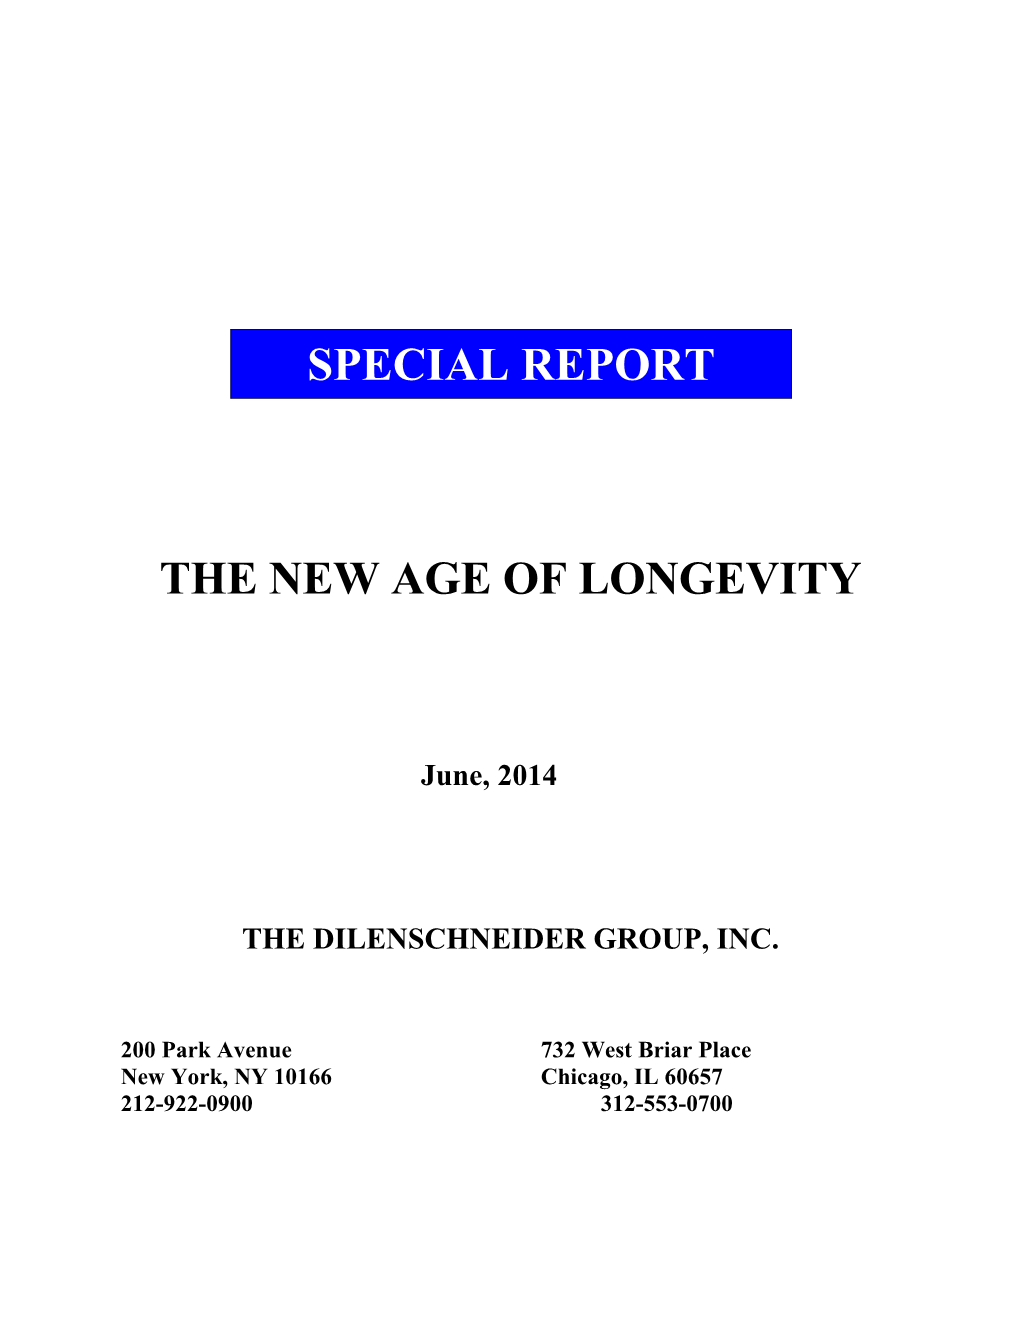 The New Age of Longevity